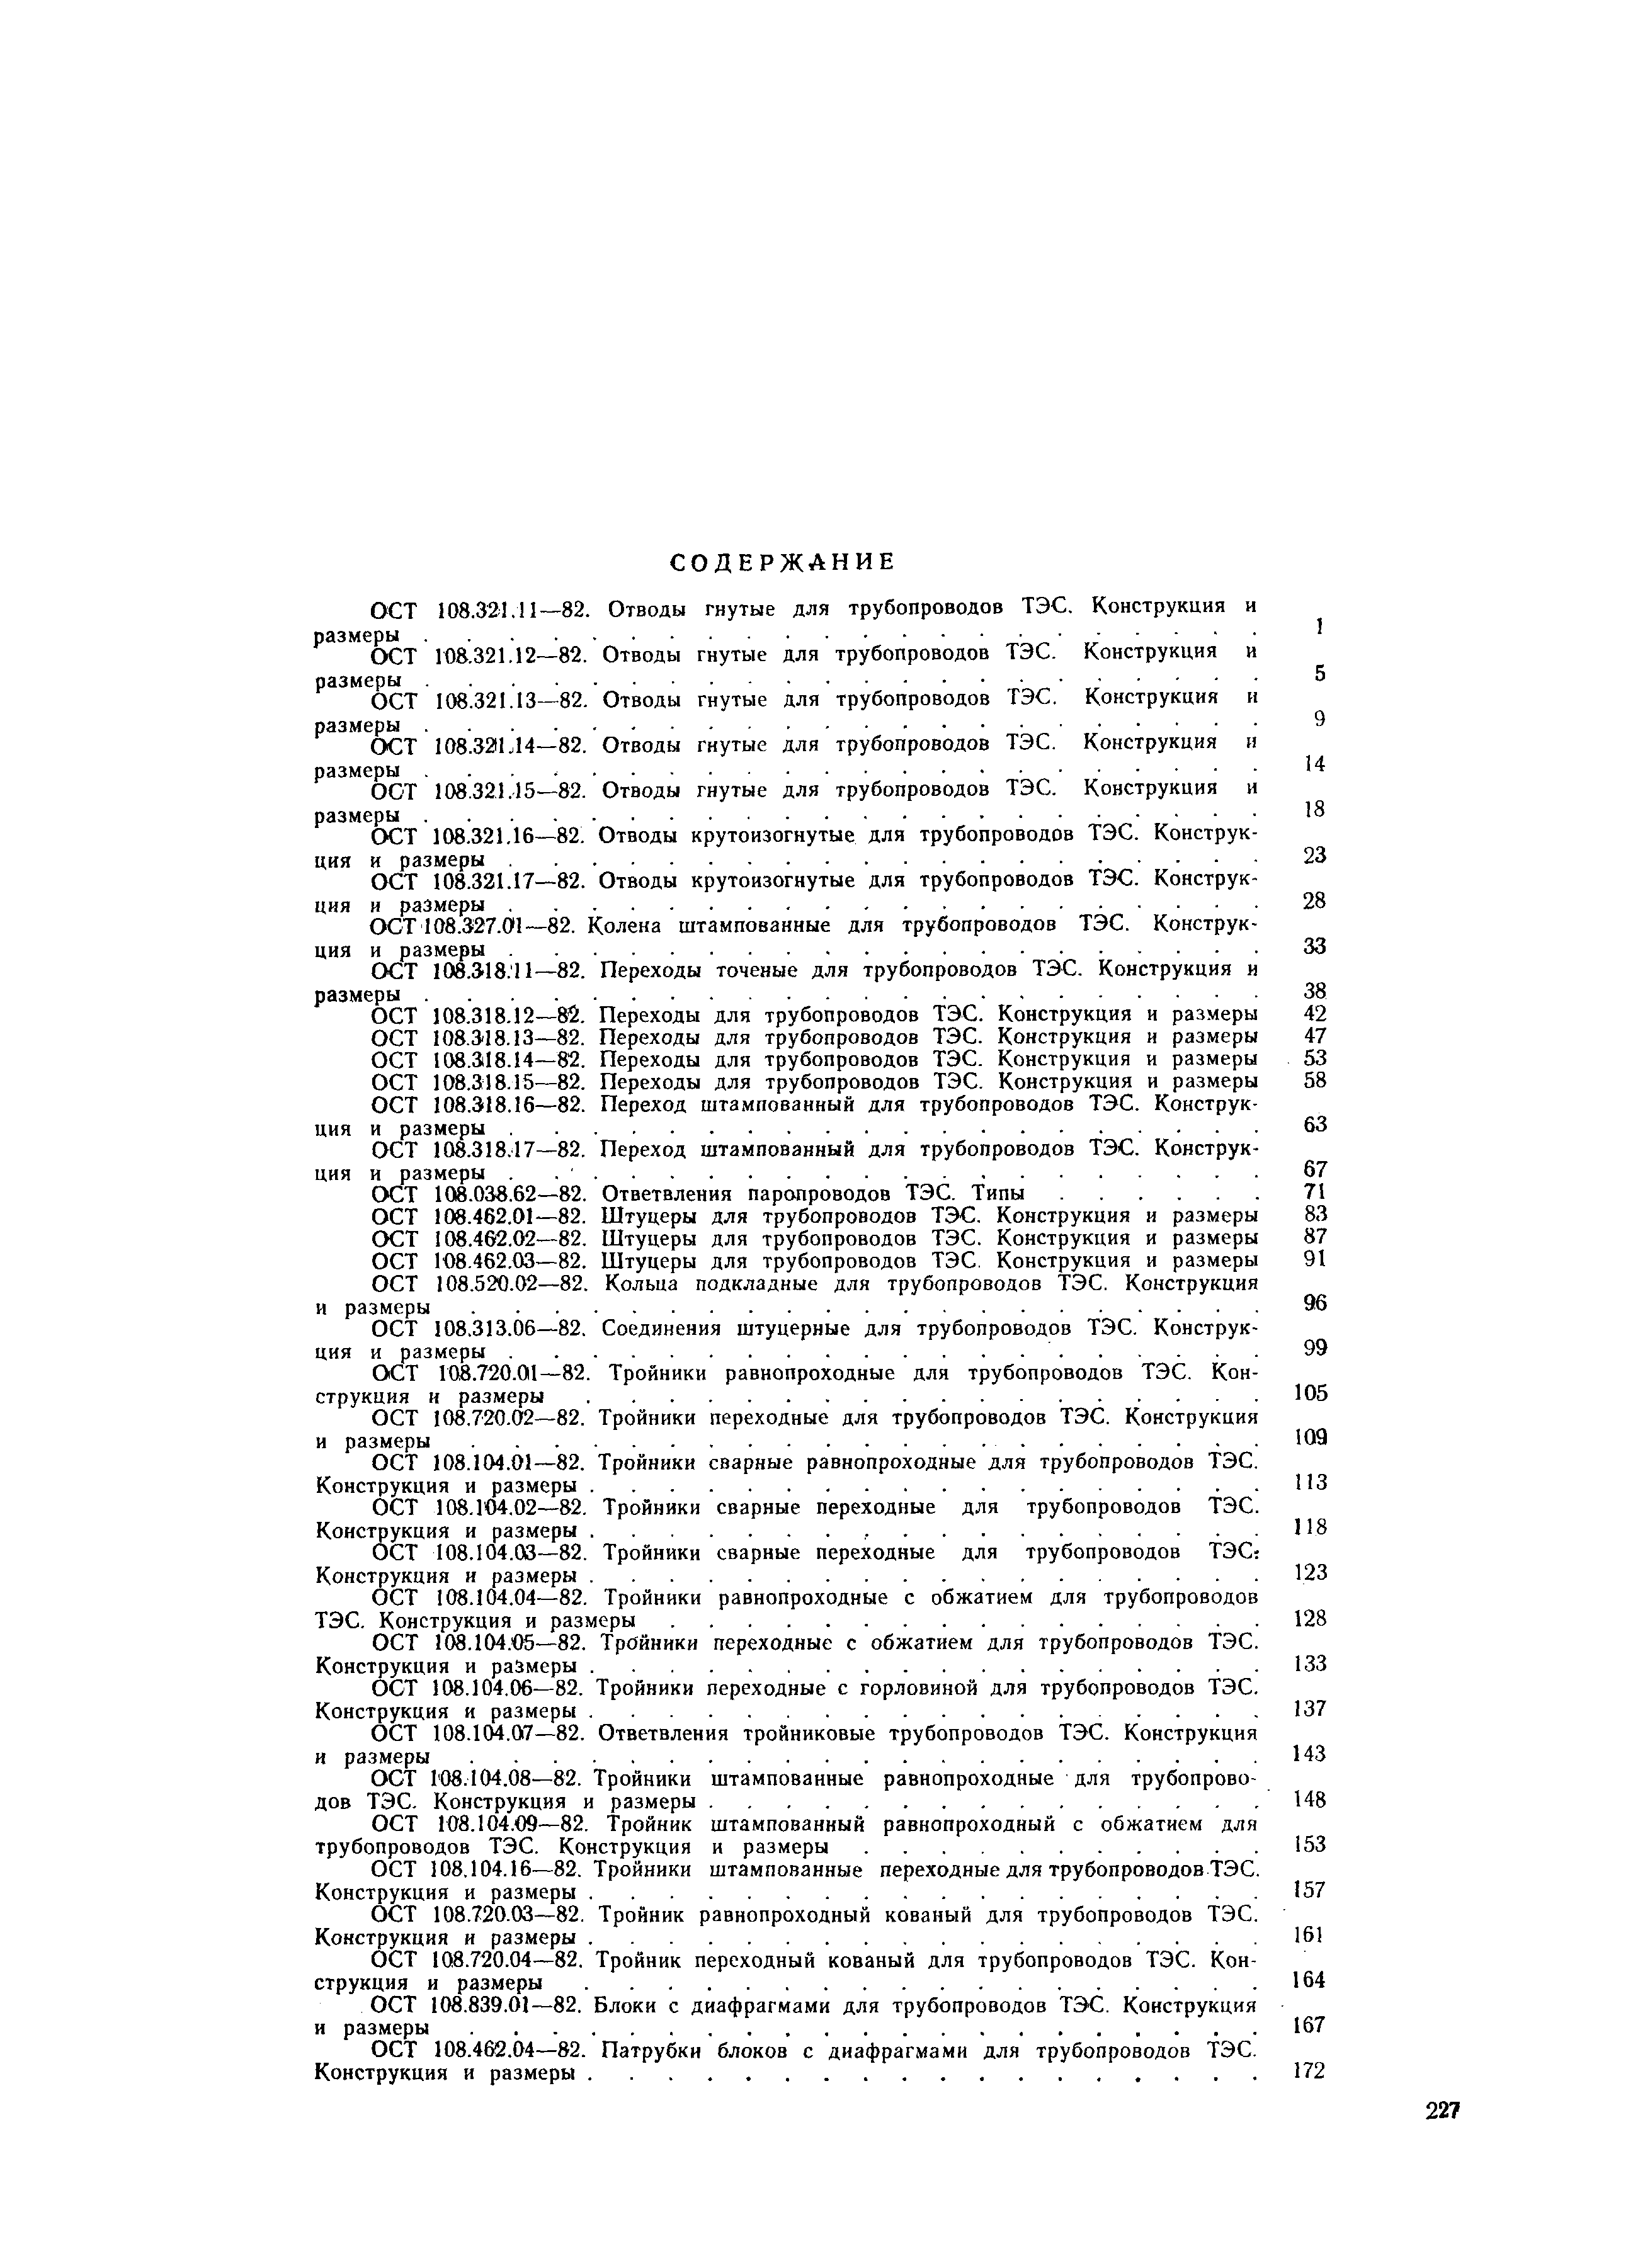 ОСТ 108.327.01-82